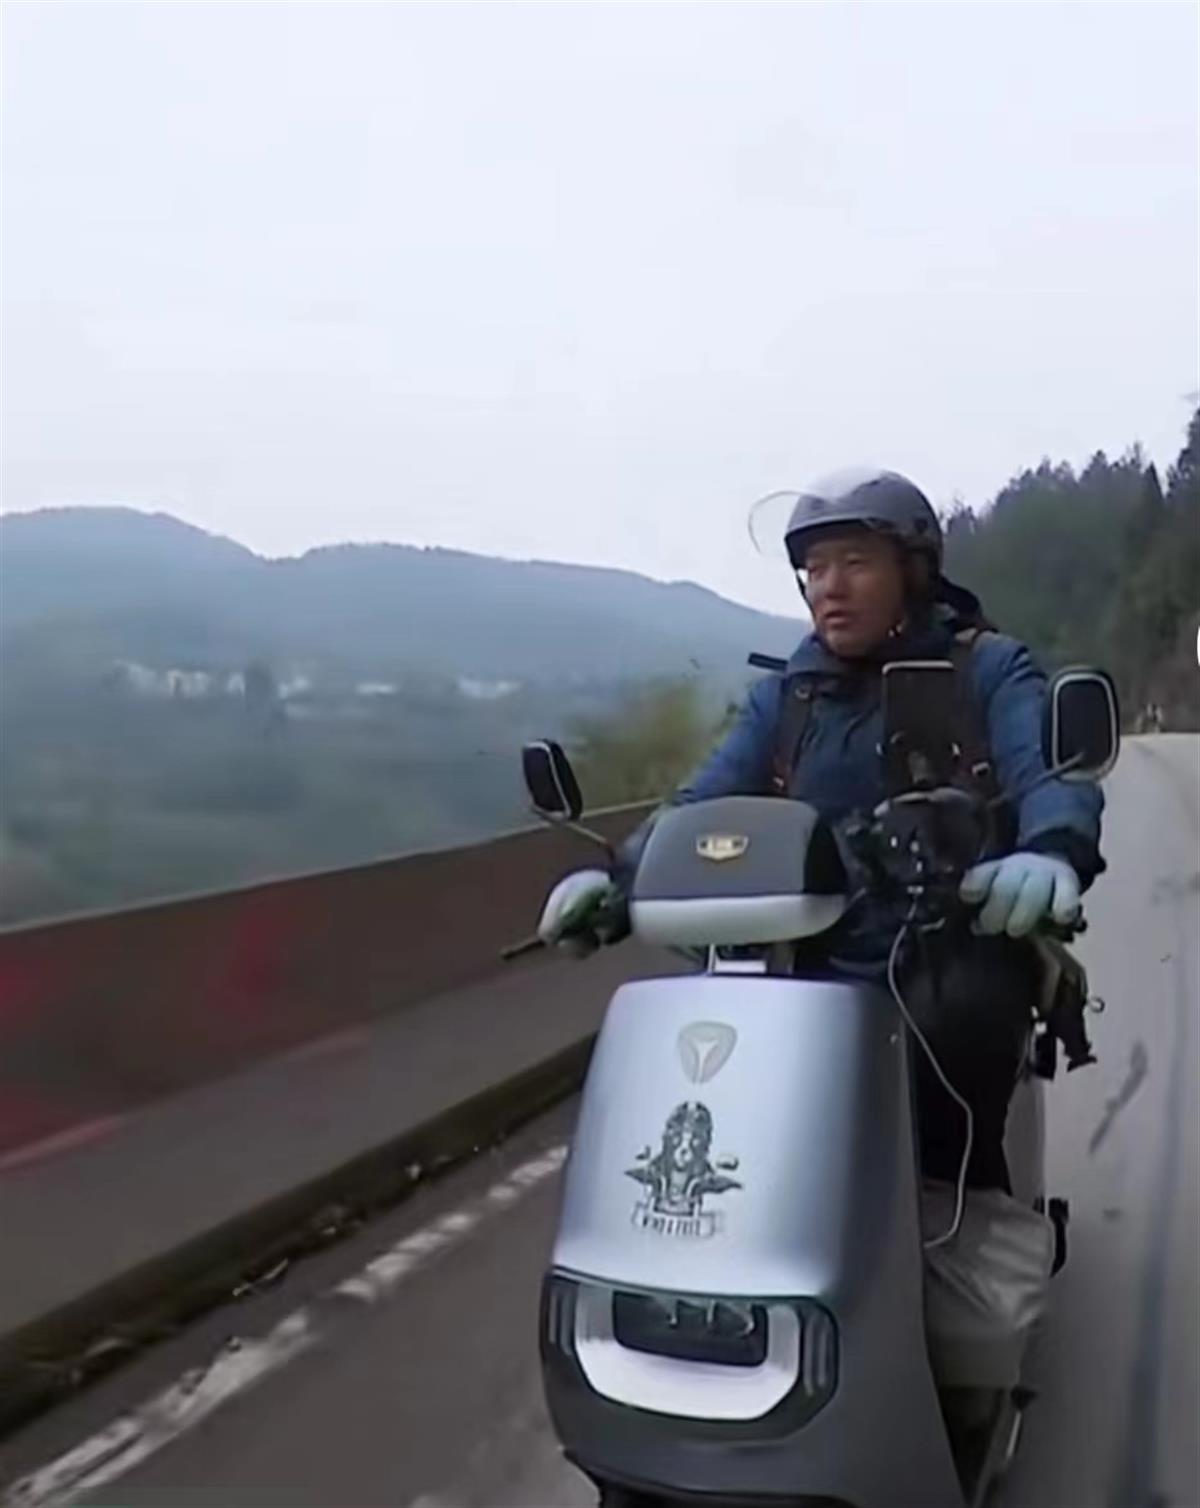 男子骑电动车从江西回成都过年:半个月跑了1500公里,每天住最便宜旅店